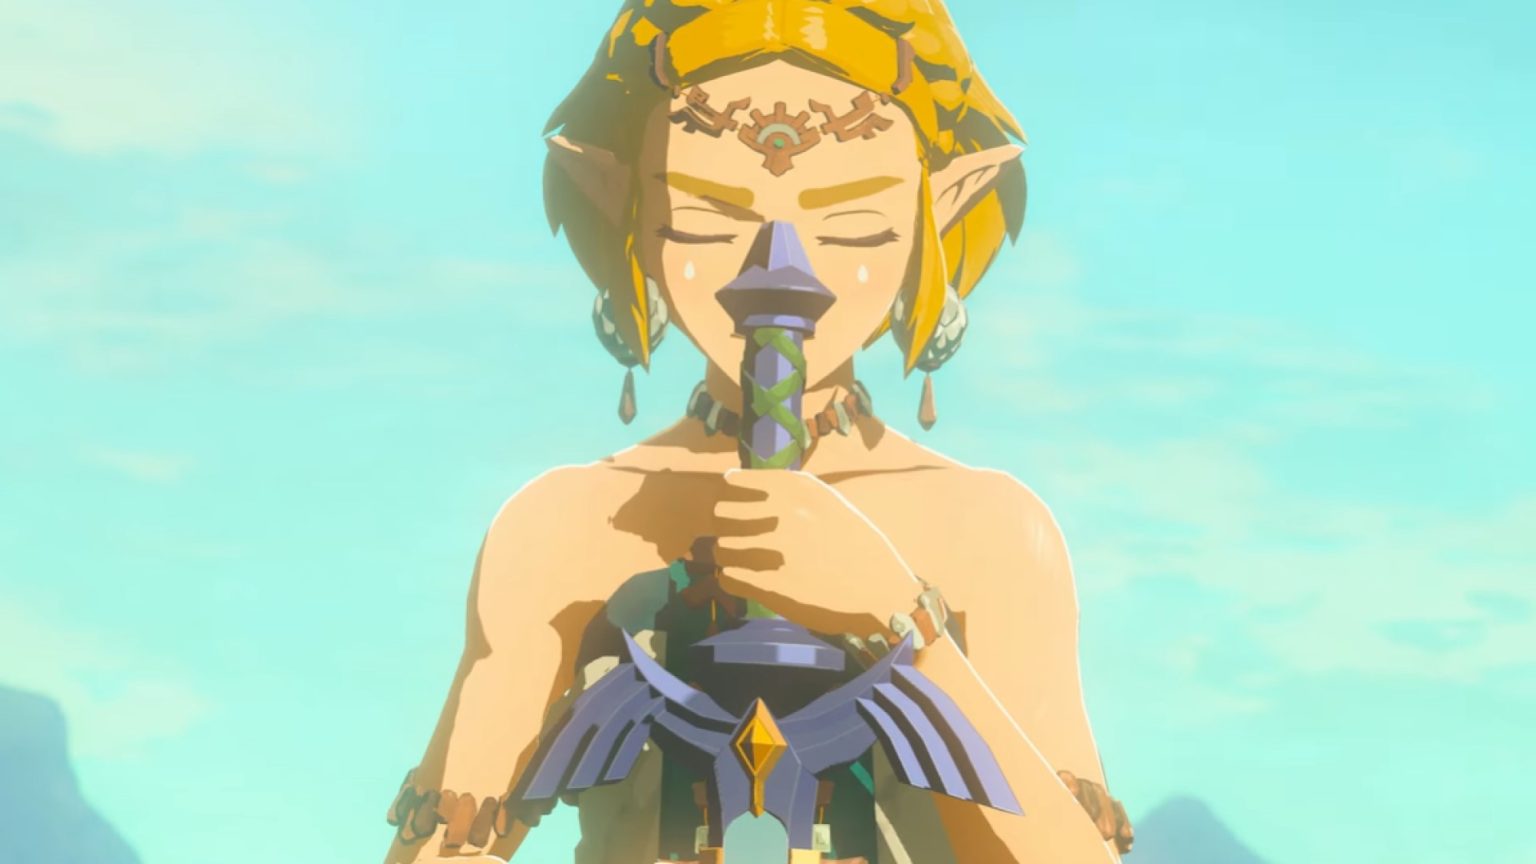 Rumores: El juego de The Legend of Zelda con Zelda como protagonista podría estar en desarrollo